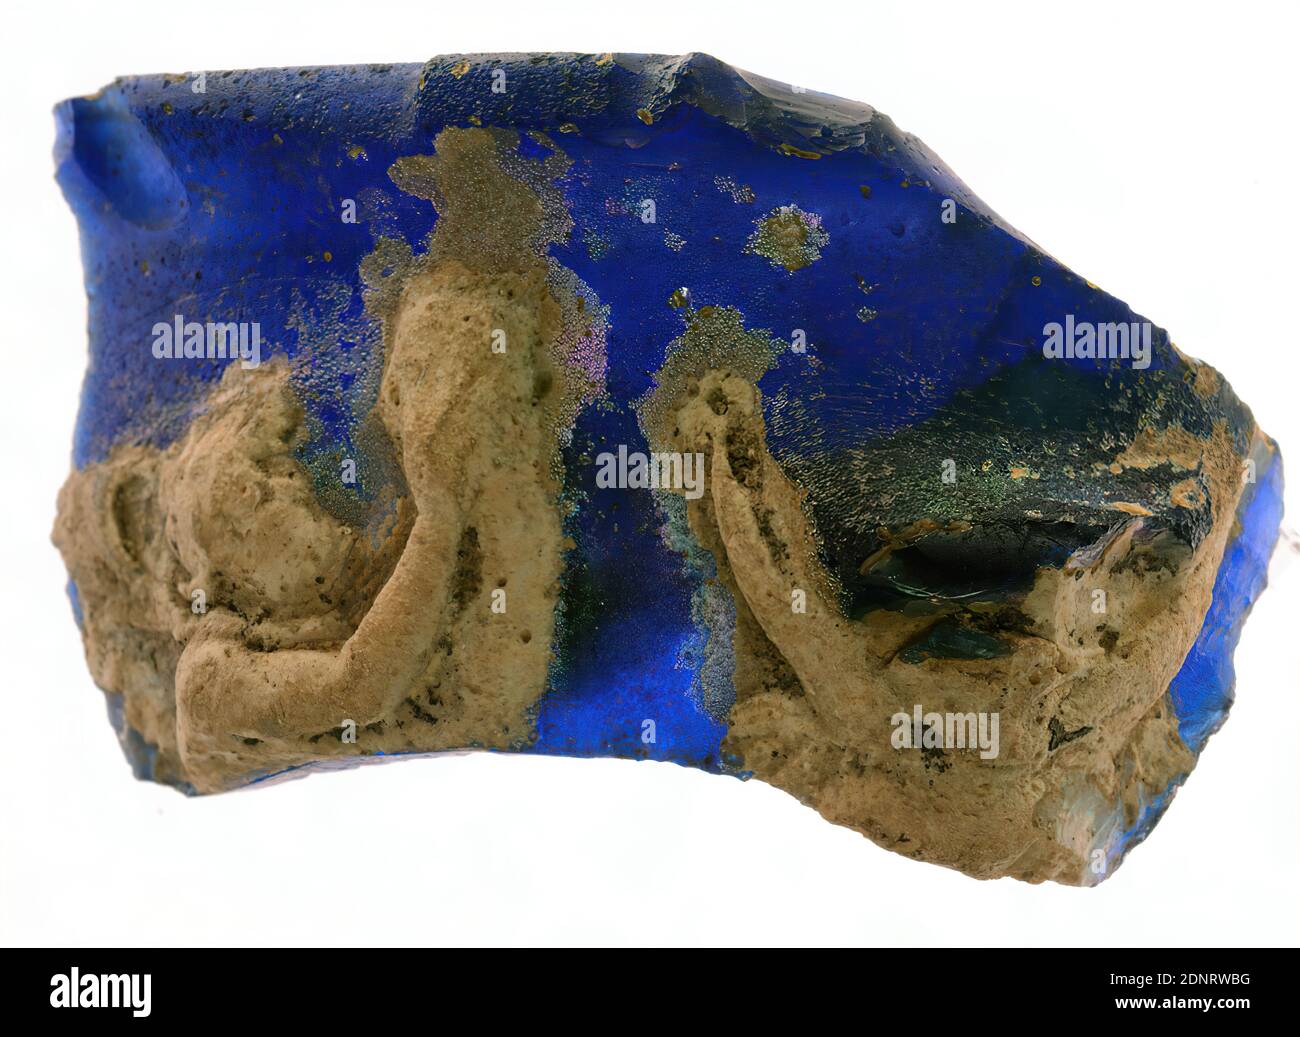 Fragment von Blitzglas (Kameoglas), vormals Sammlung Adalbert von Lanna (Prag), Glas, in Form geblasen, mundgeblasen, geflasht, geschnitten, Glas, Gesamt: Höhe: 3.2 cm; Breite: 5.6 cm; Tiefe: 1 cm (0.5-1.0 cm), Trink- und Barware, Tischdekoration, Geni, frühkaiserliche Zeit, römische Antike, Das Fragment war Teil eines Gefäßes mit oben gebogenem Rand das durchsichtige blaue Glas ist mit einer Schicht aus opaken weißen Glas bedeckt und ein Relief wird mit einem Rad im Stil der Portland-Vase im London British Museum ausgeschnitten. Der Boden ist bis auf das Blau geschliffen. Stockfoto